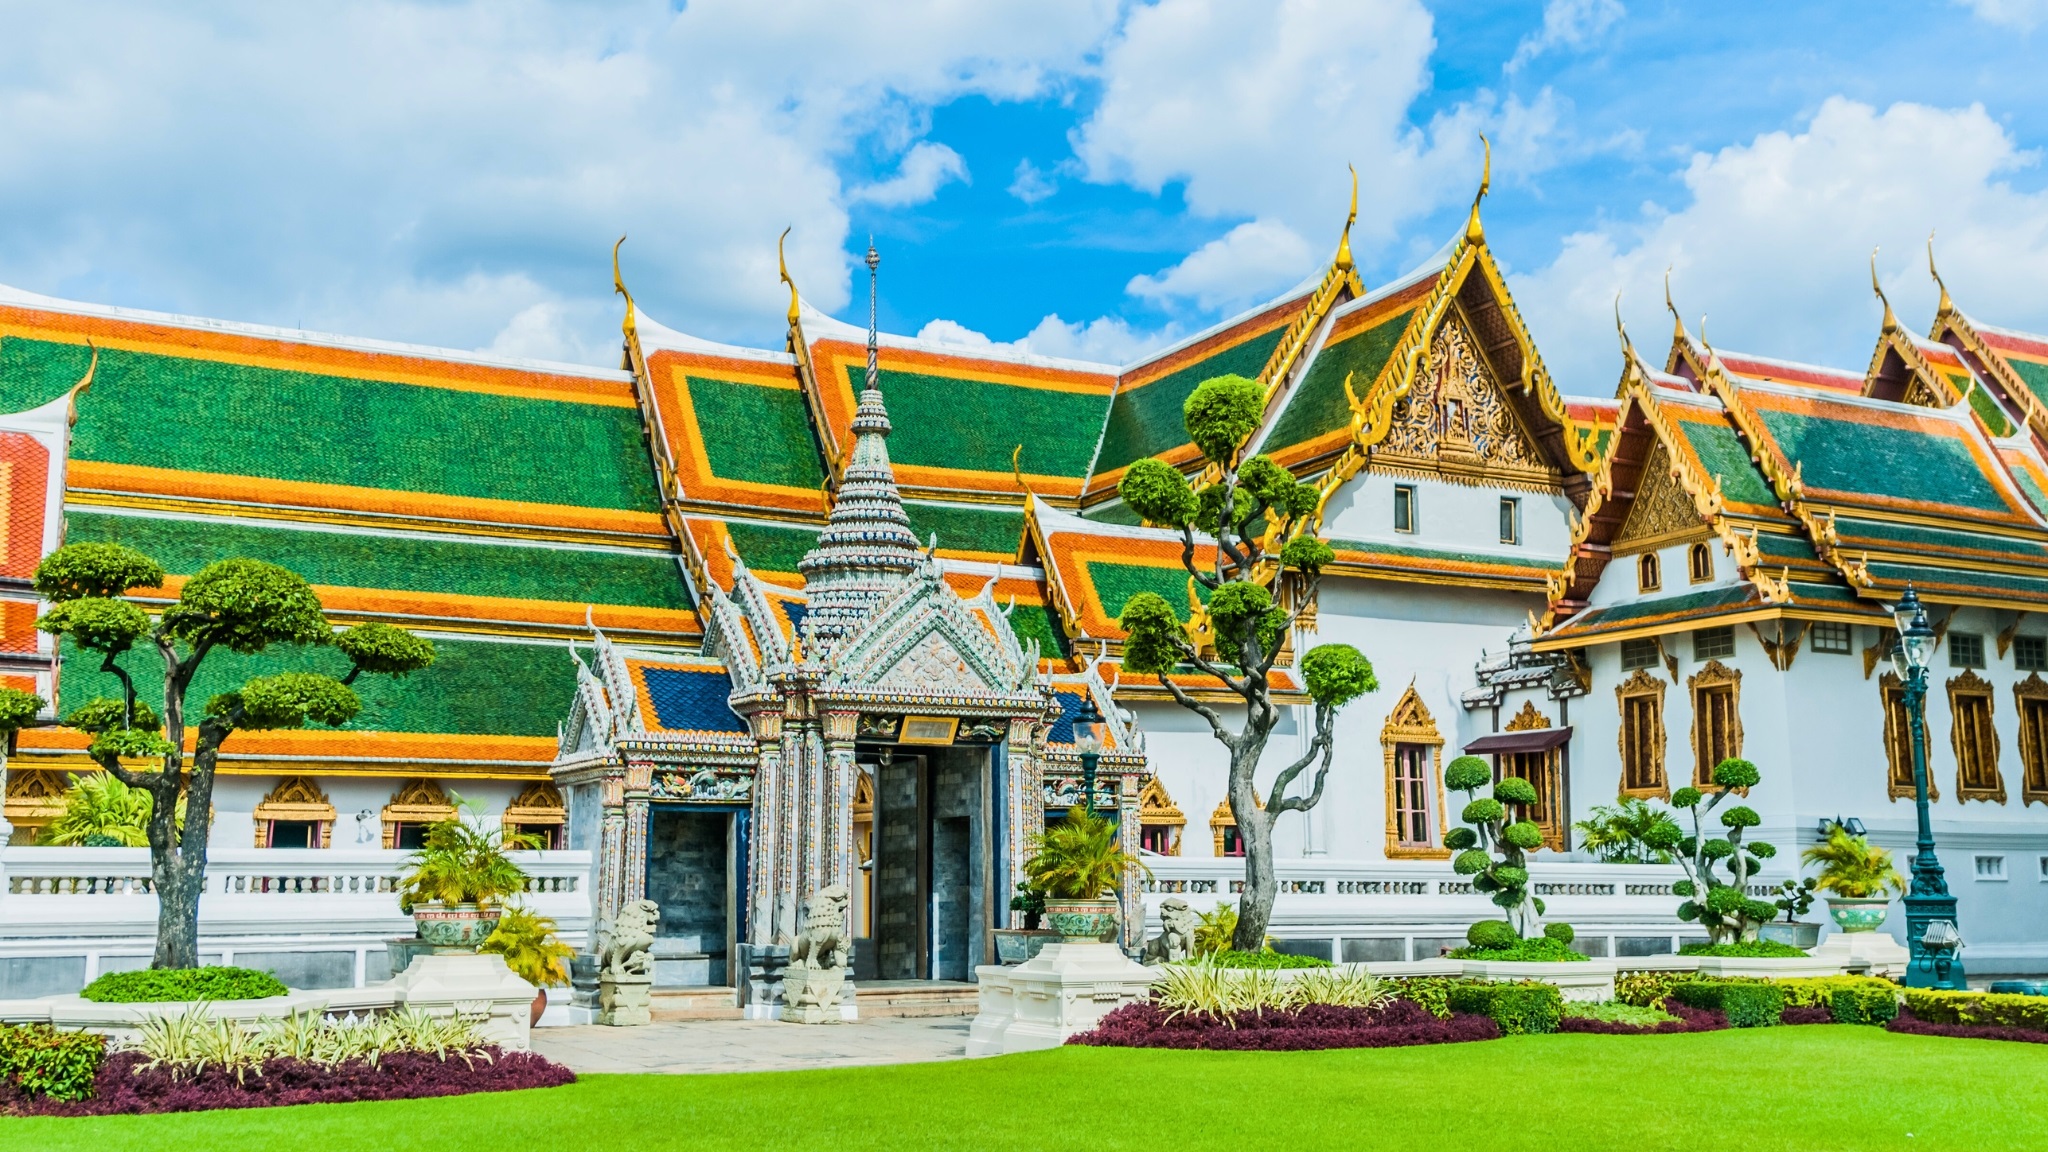 Royal Palace One Of Bangkok's Most Important Spots